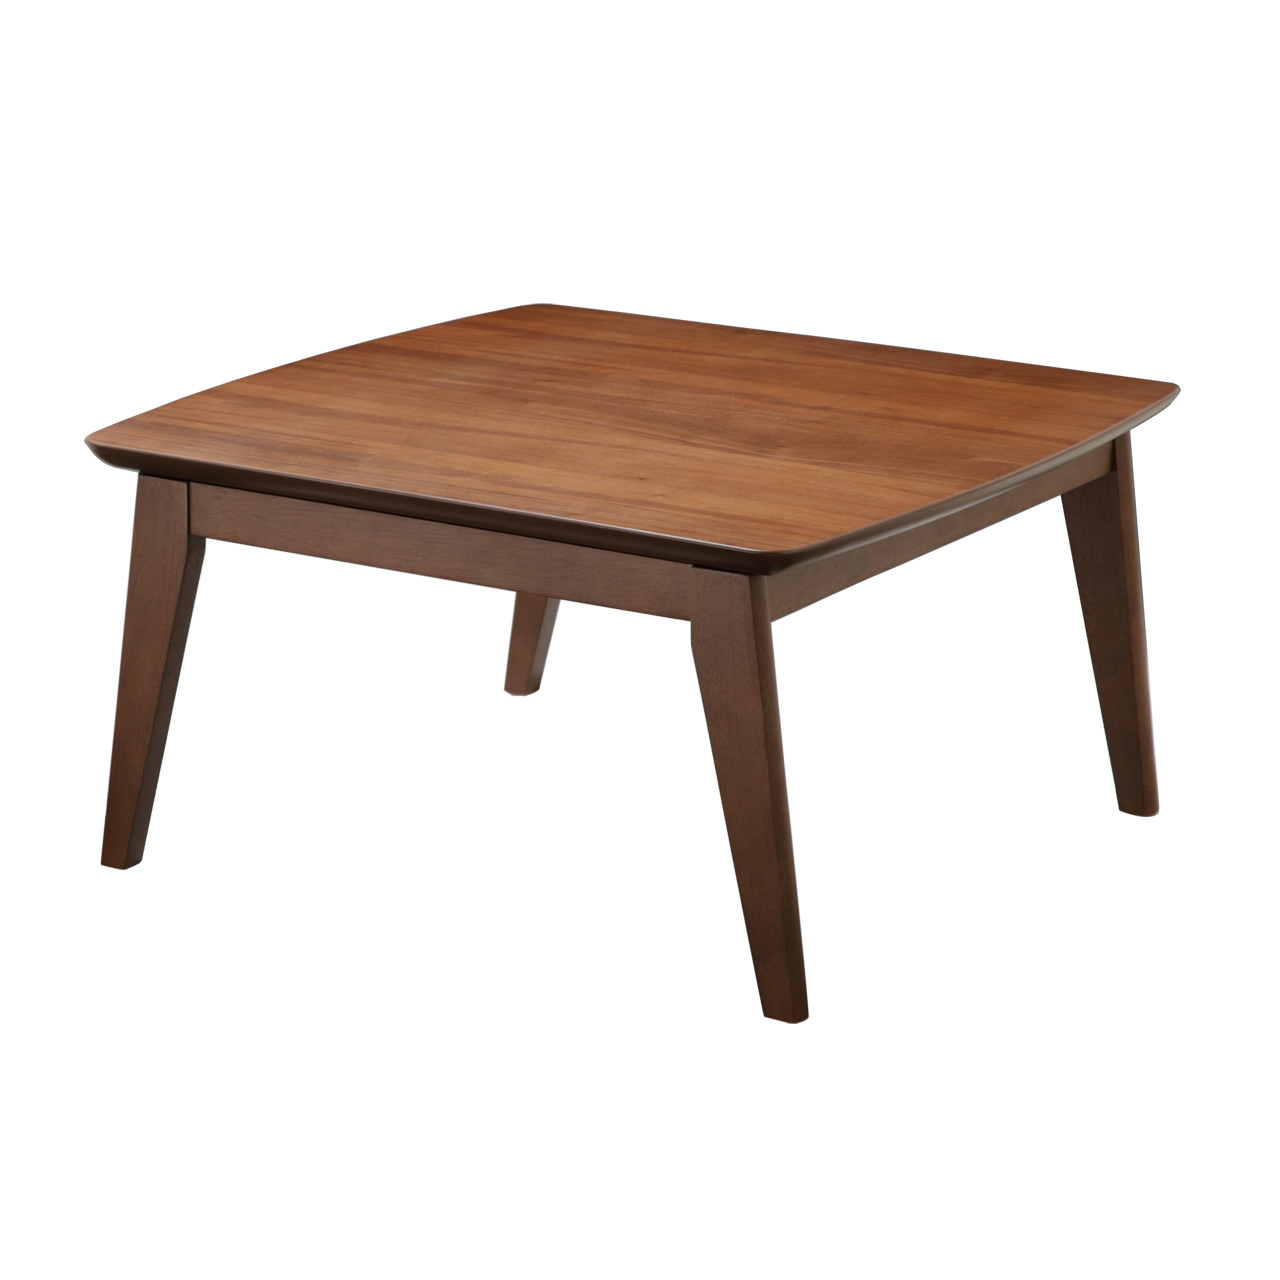 こたつ こたつテーブル 北欧 正方形 北欧デザインスクエアこたつ イーズ 単品 75x75cm おしゃれ 天然木 一人用 AW10